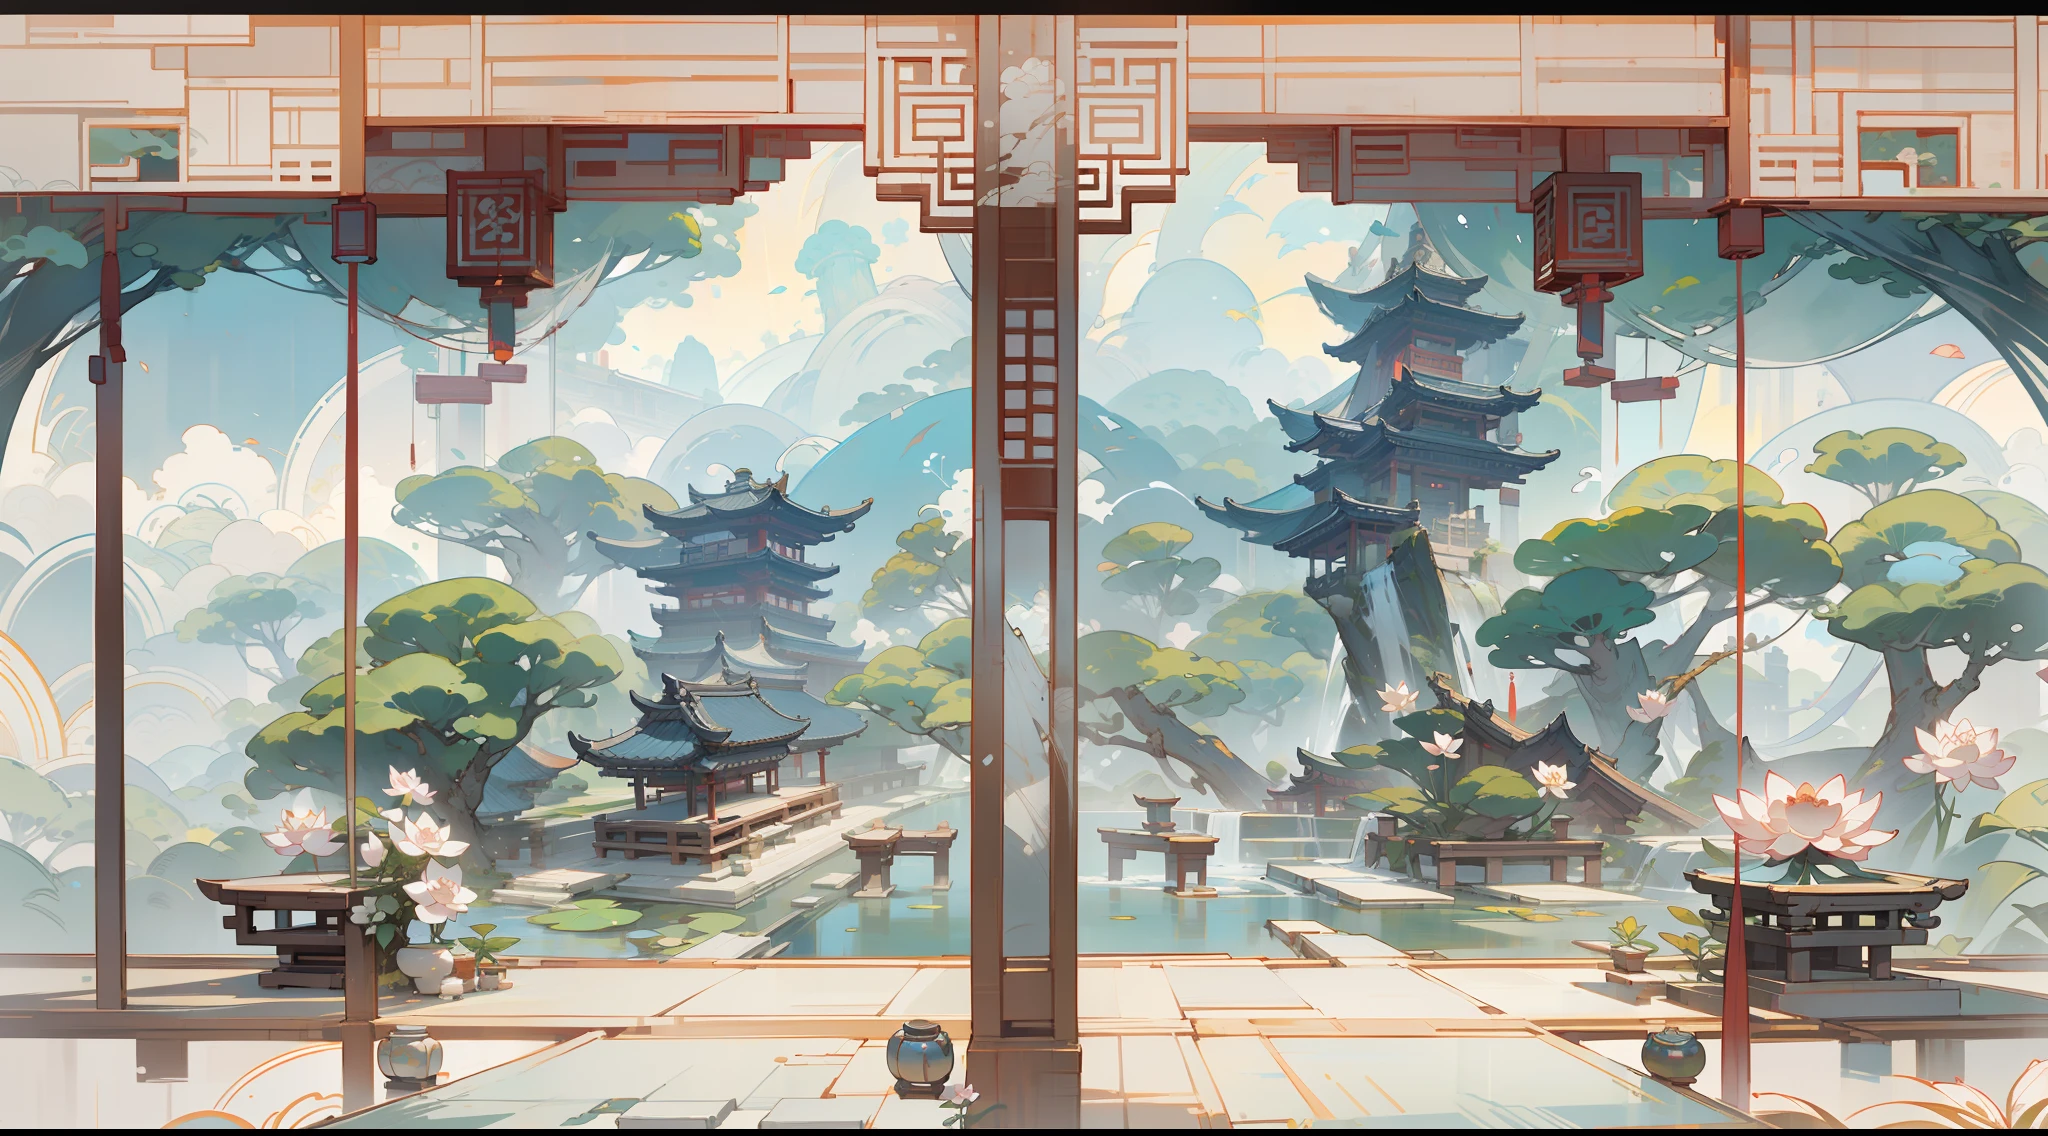 仿古遊戲場景設計，大樹，花香，蓮花建築，浮動桌子，被雲包圍，藍天，白雲，中國水墨OC渲染雕塑